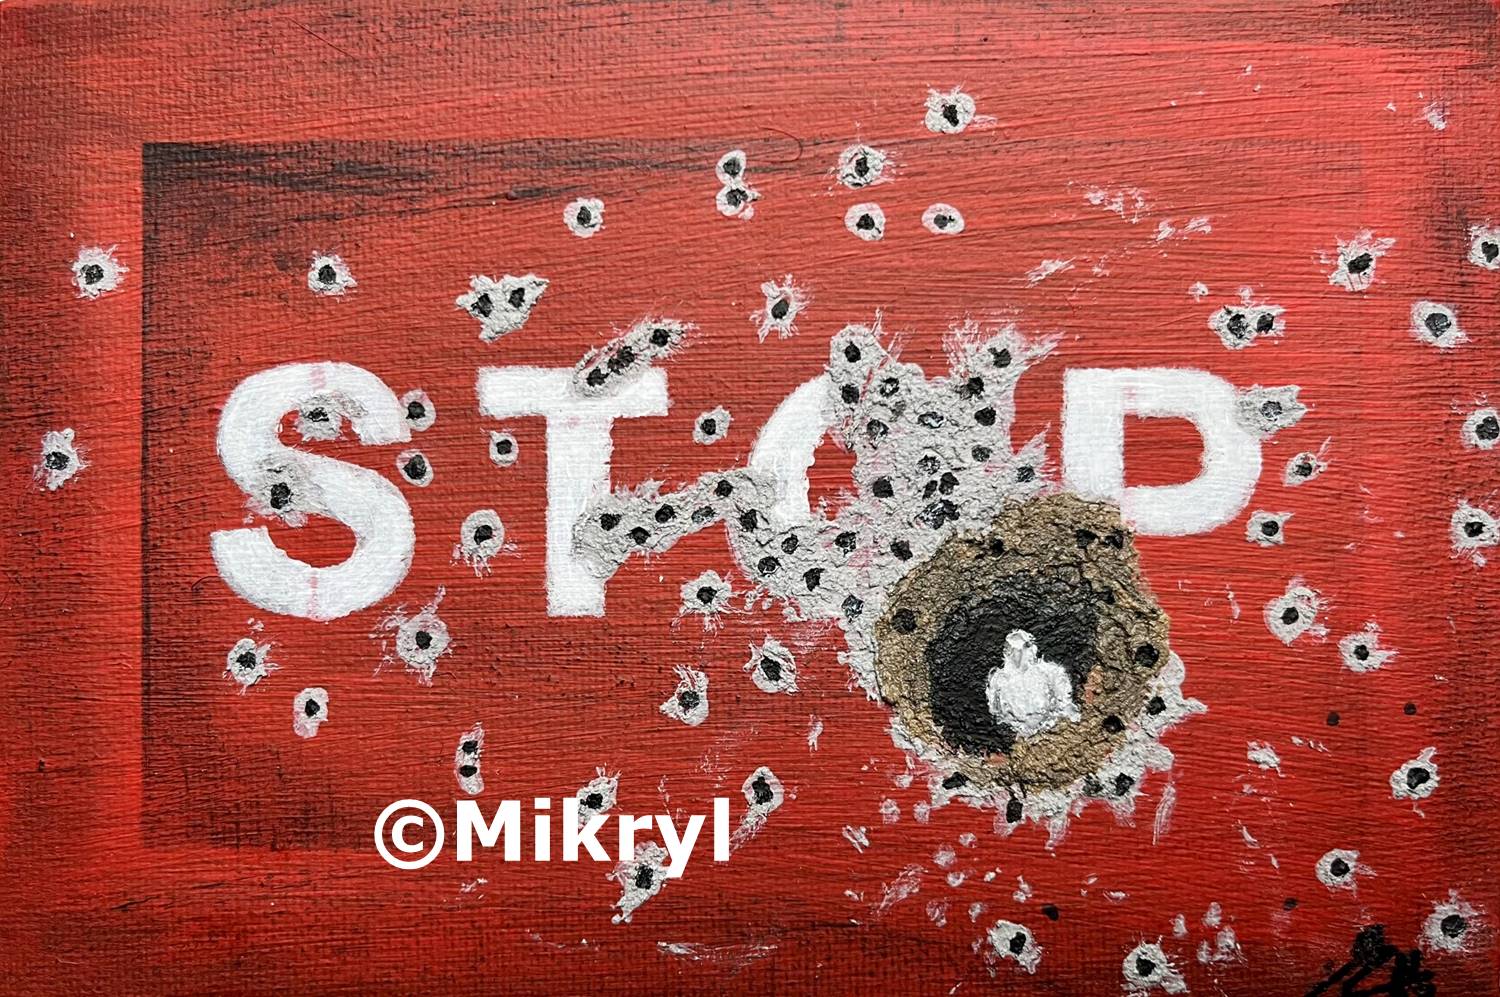 STOP (frei nach Banksy)